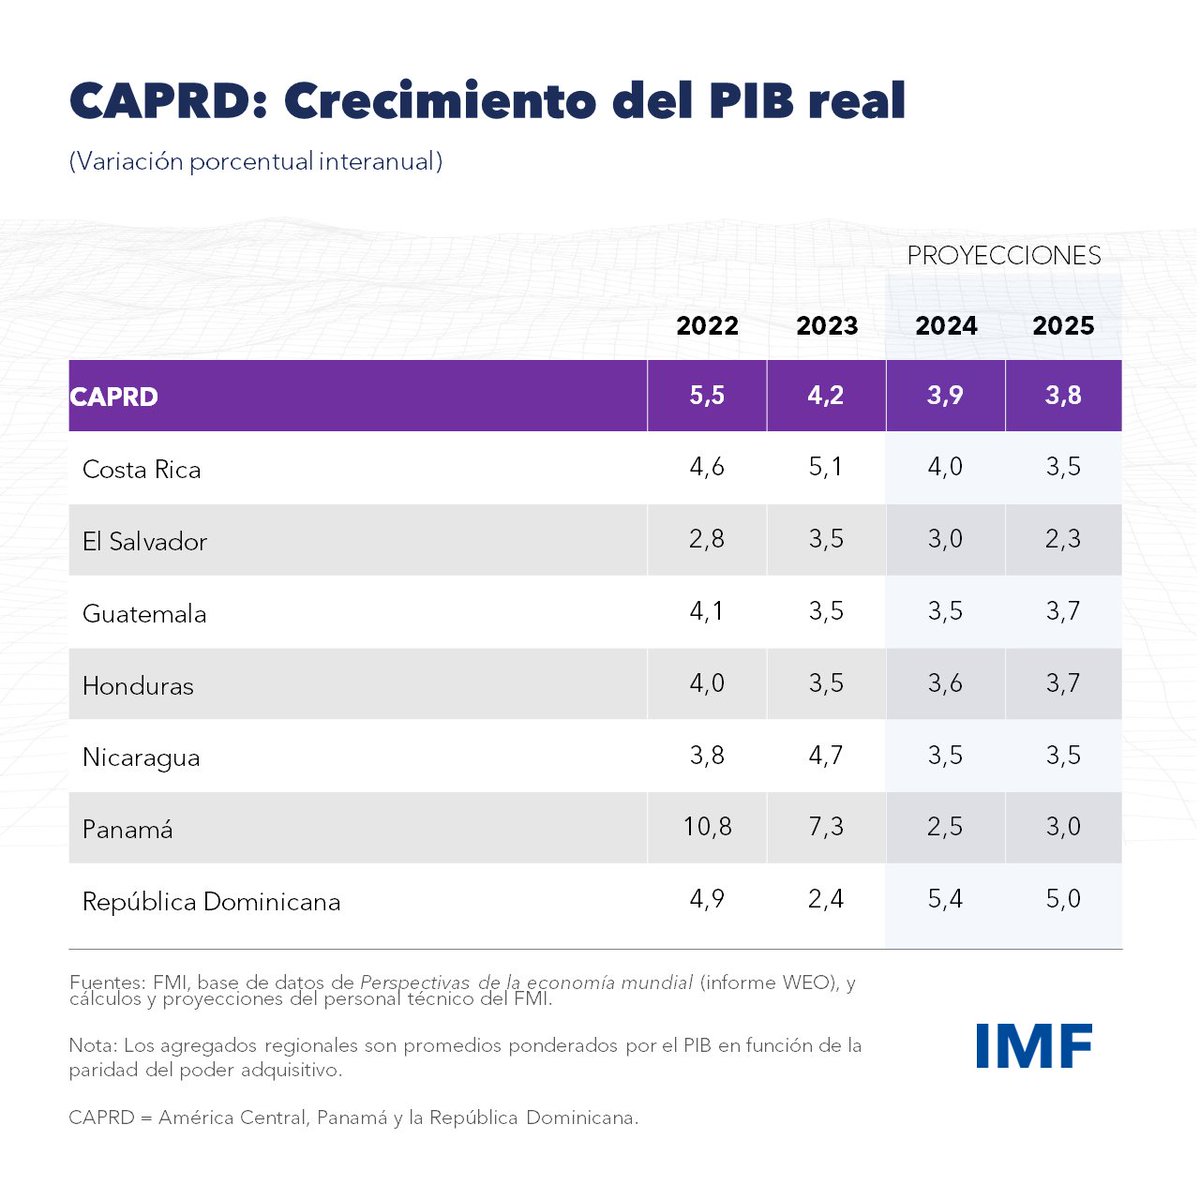 Proyecciones de crecimiento del FMI para América Central en 2024 🇨🇷Costa Rica: 4.0 % 🇸🇻El Salvador: 3.0 % 🇬🇹Guatemala: 3.5 % 🇭🇳Honduras: 3.6 % 🇳🇮Nicaragua: 2.5 % 🇵🇦Panamá: 3.5 % 🇩🇴República Dominicana: 5.4 % imf.org/es/Publication…